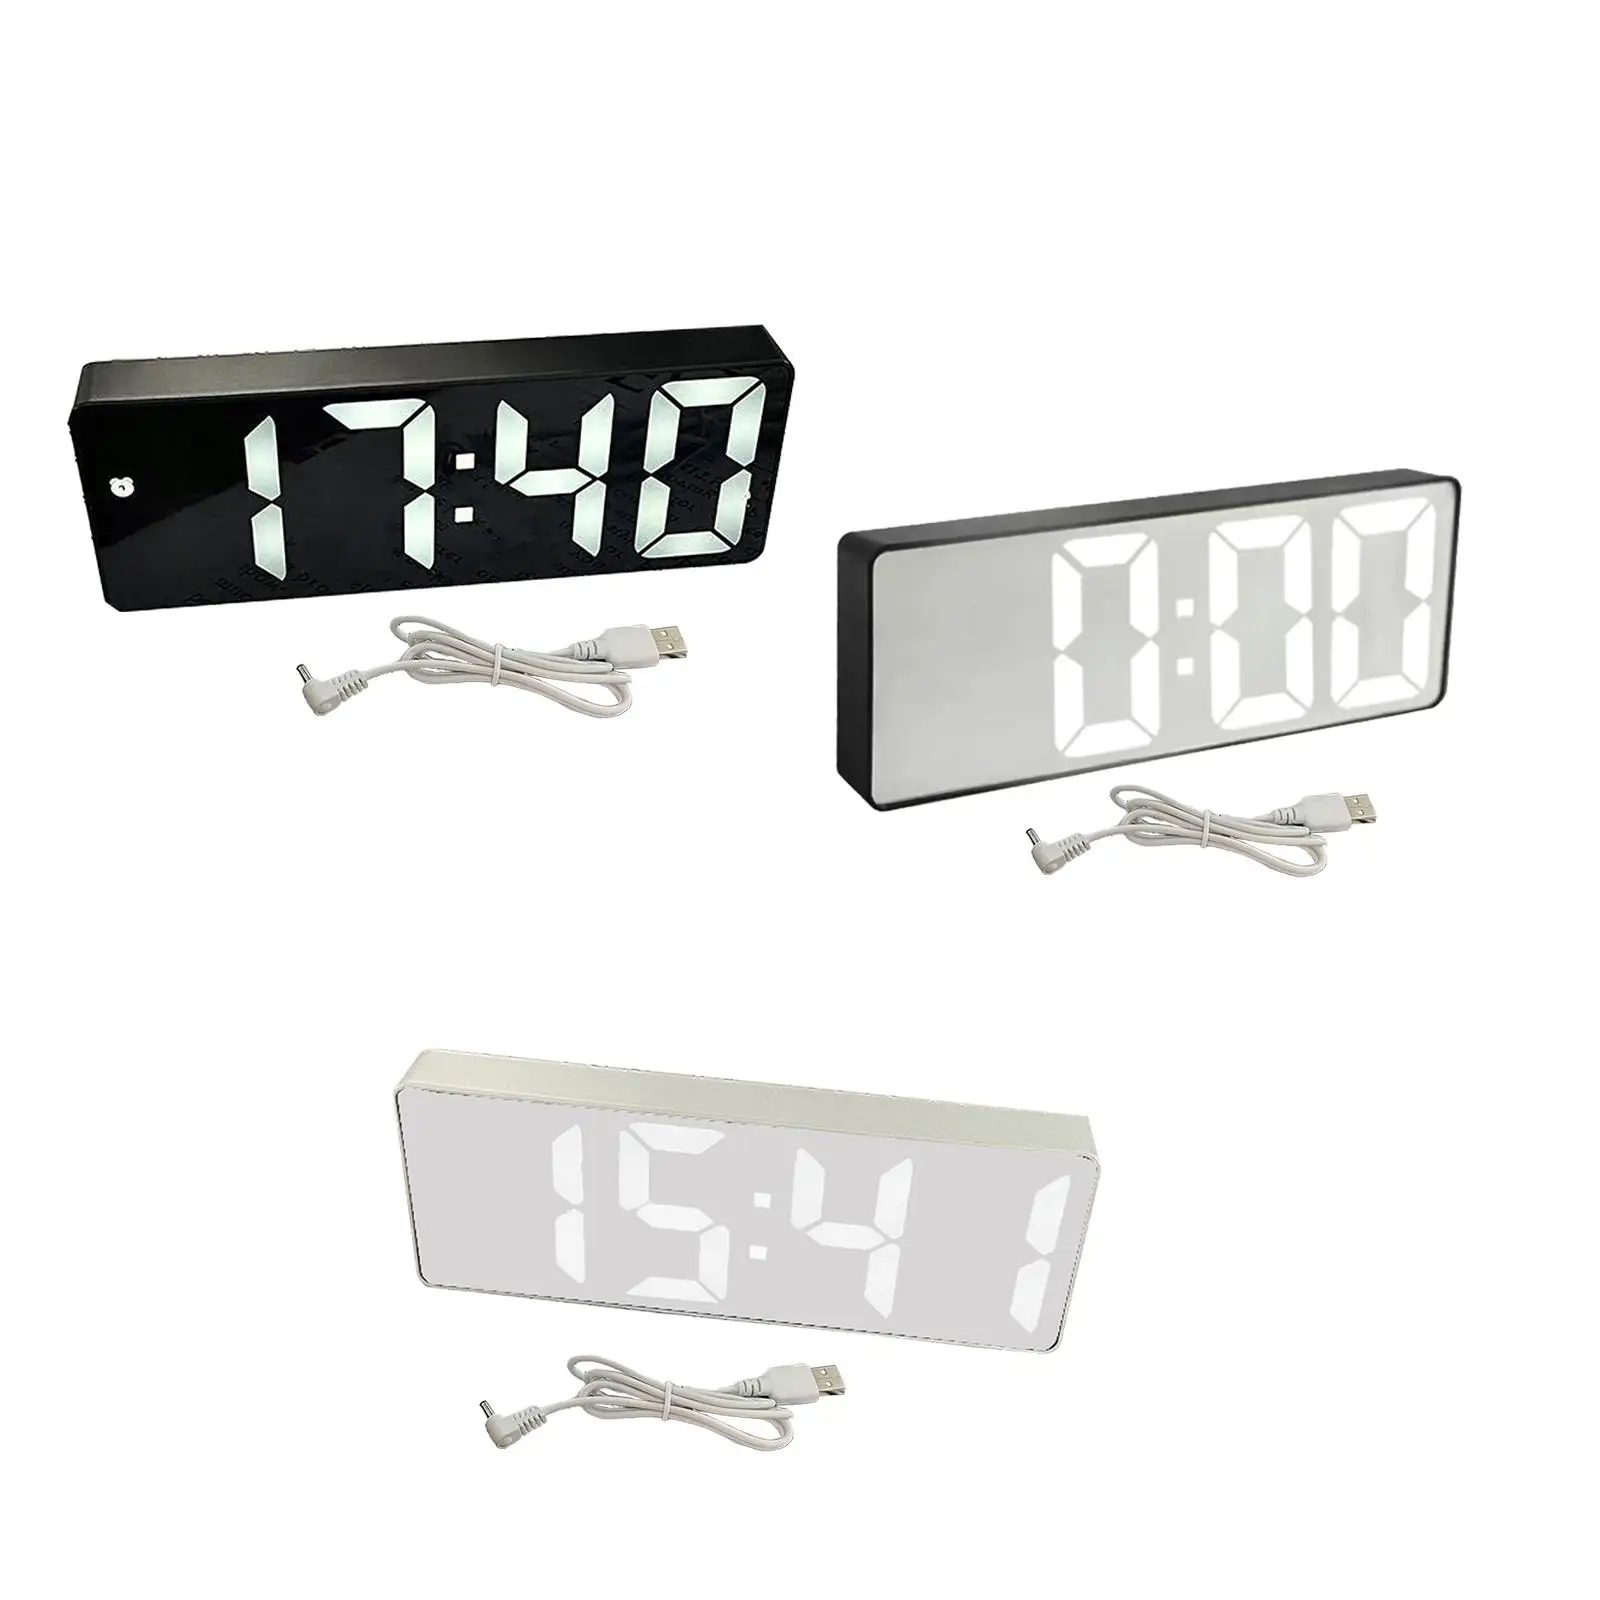 Digital Alarm Clock 12 24H Display 3 Levels Adjustable Brightness Table Desktop Clock for Hall Cafe Bedroom Living Room Office